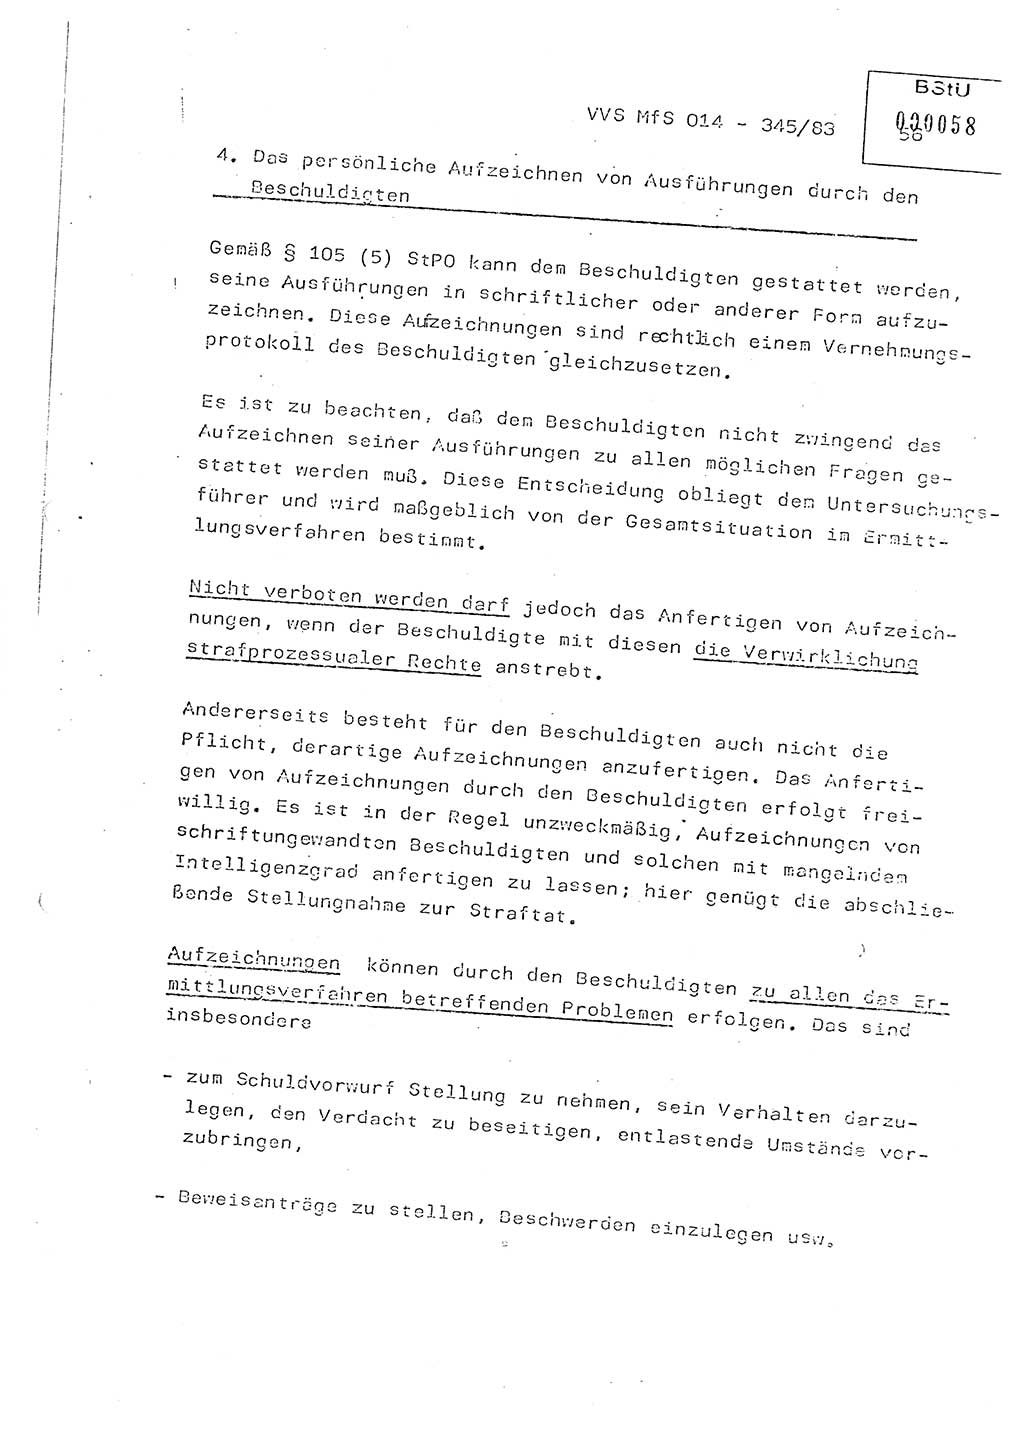 Lektion Ministerium für Staatssicherheit (MfS) [Deutsche Demokratische Republik (DDR)], Hauptabteilung (HA) Ⅸ, Vertrauliche Verschlußsache (VVS) o014-345/83, Berlin 1983, Seite 56 (Lekt. MfS DDR HA Ⅸ VVS o014-345/83 1983, S. 56)